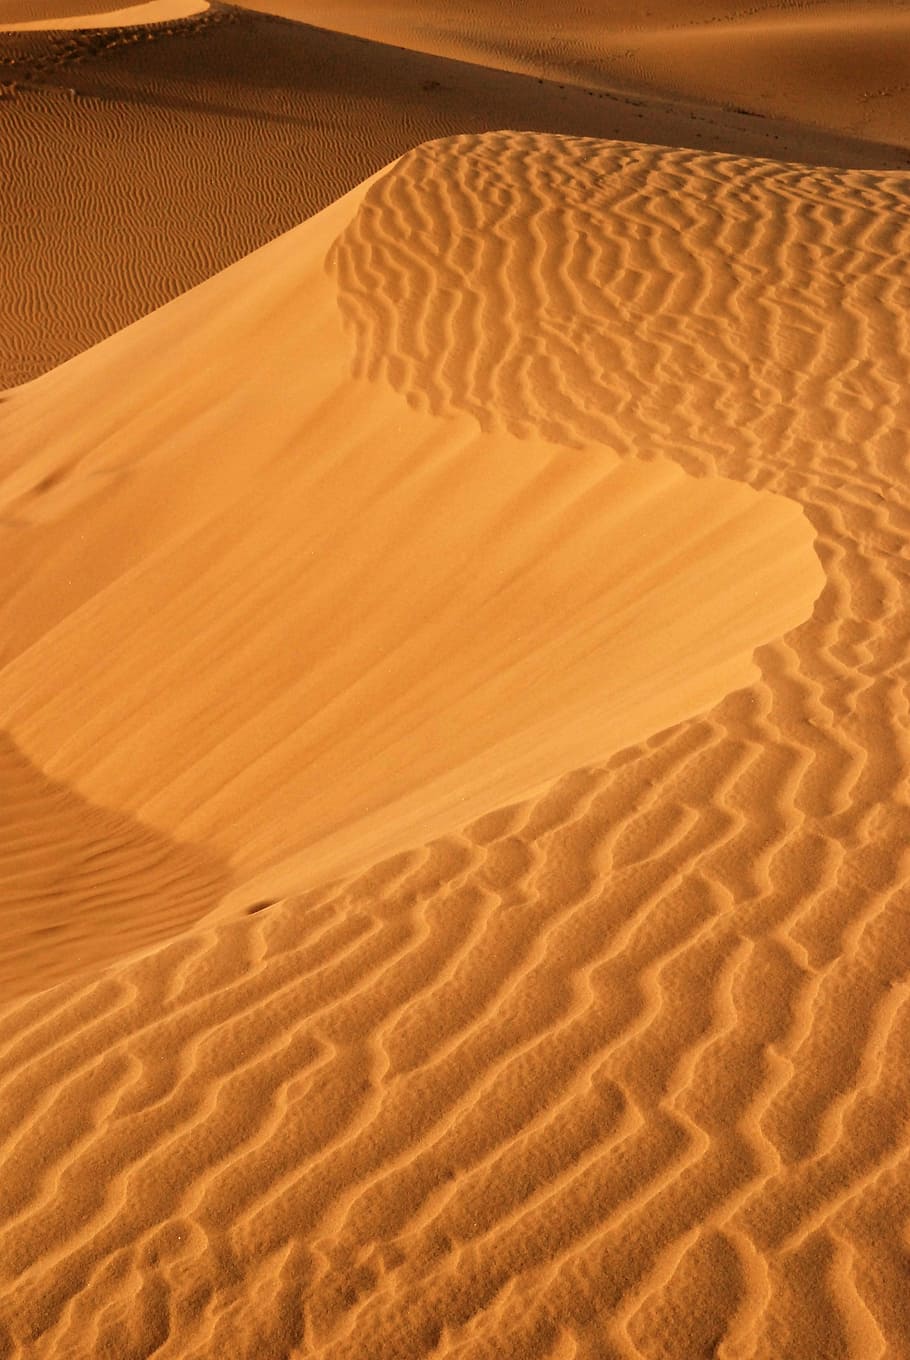 黄金の砂, 砂丘, 砂漠, 砂, 土地, 風景, 風景-自然, 気候, 乾燥した気候, パターン